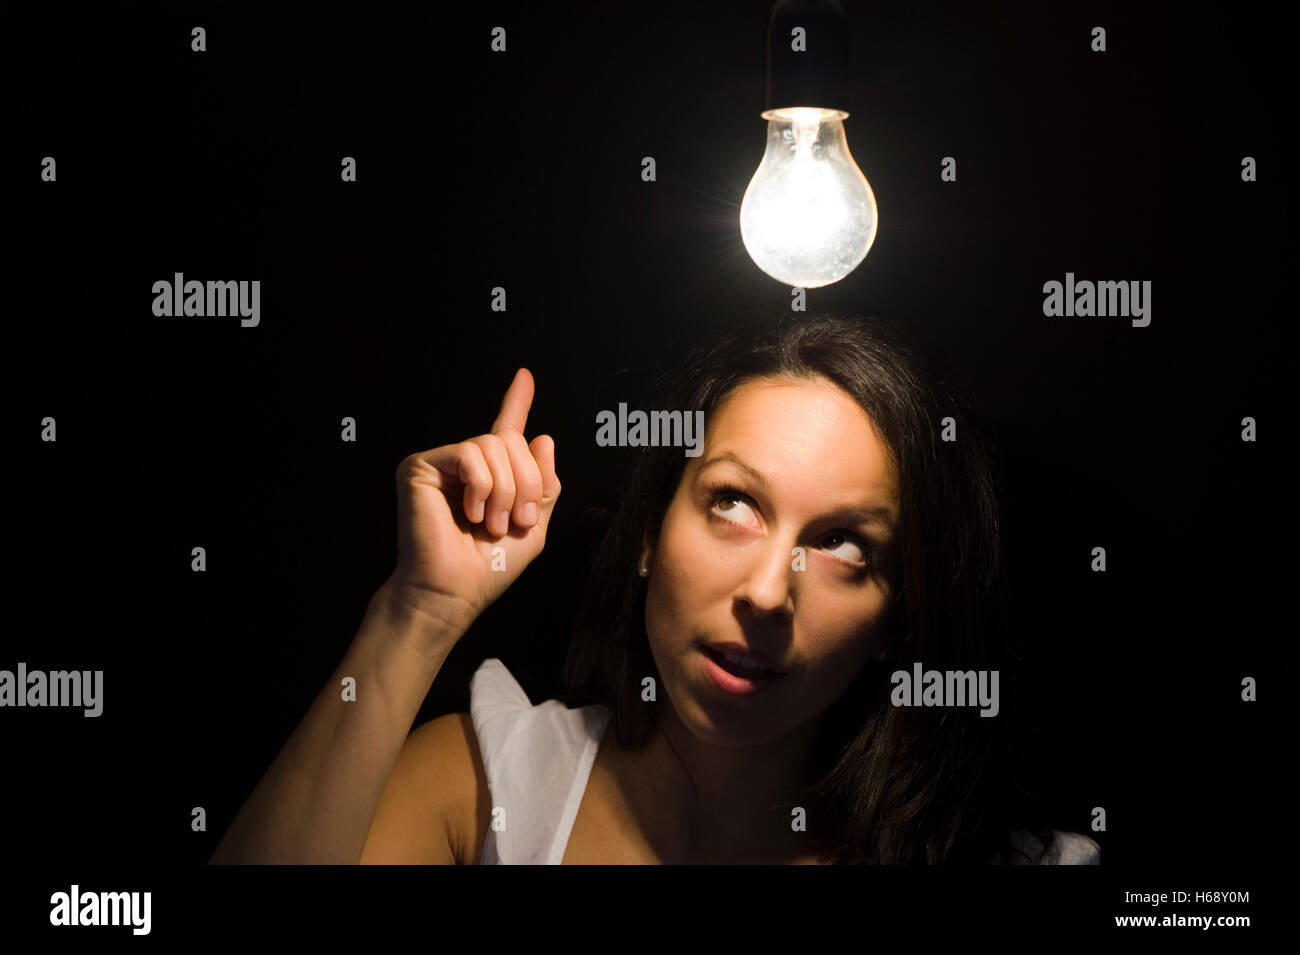 Femme, lampe, image symbolique pour l'illumination Banque D'Images